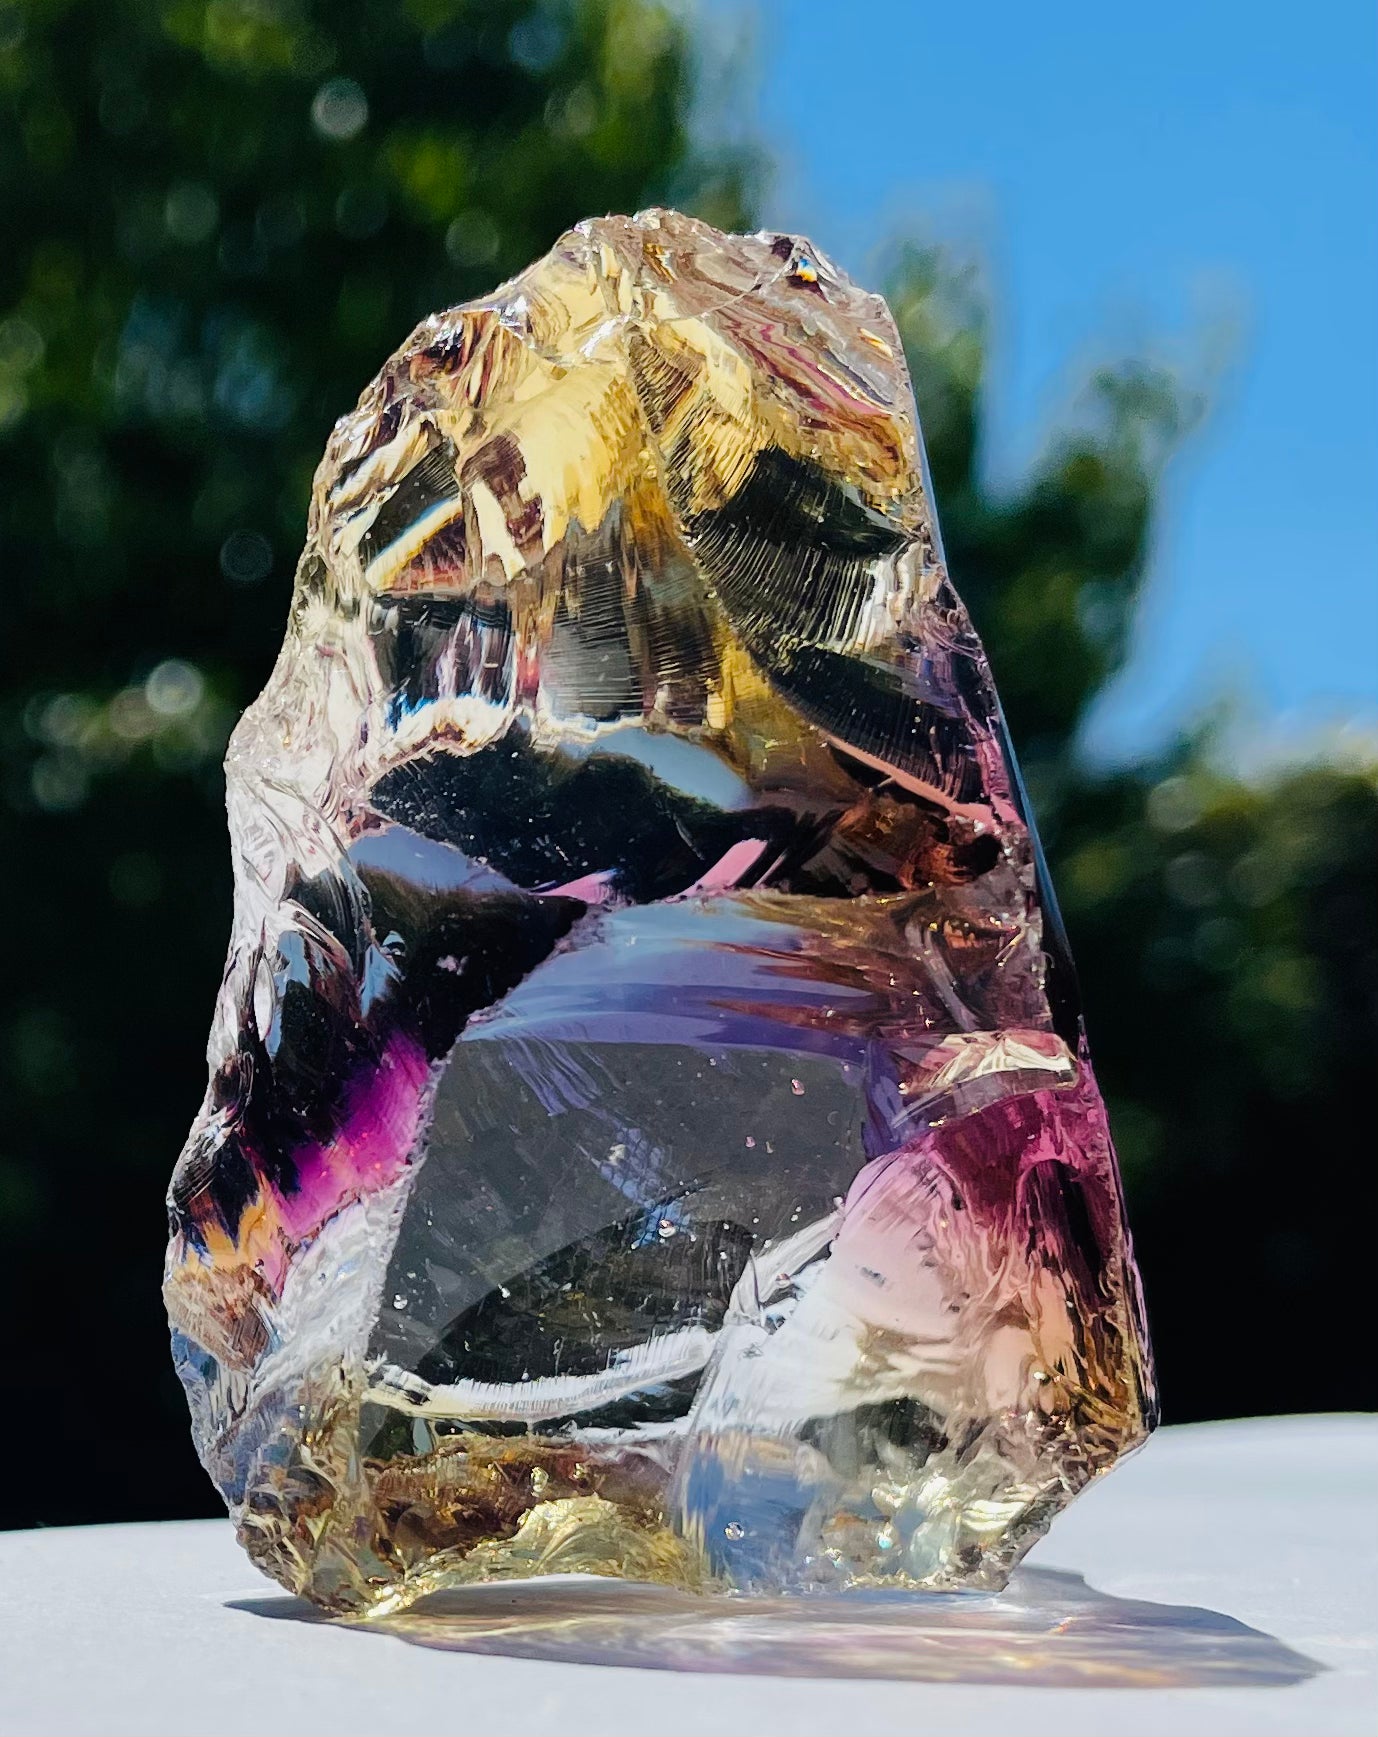 ANDARA cristallin multicolore 100 g  | Pierres Andaras